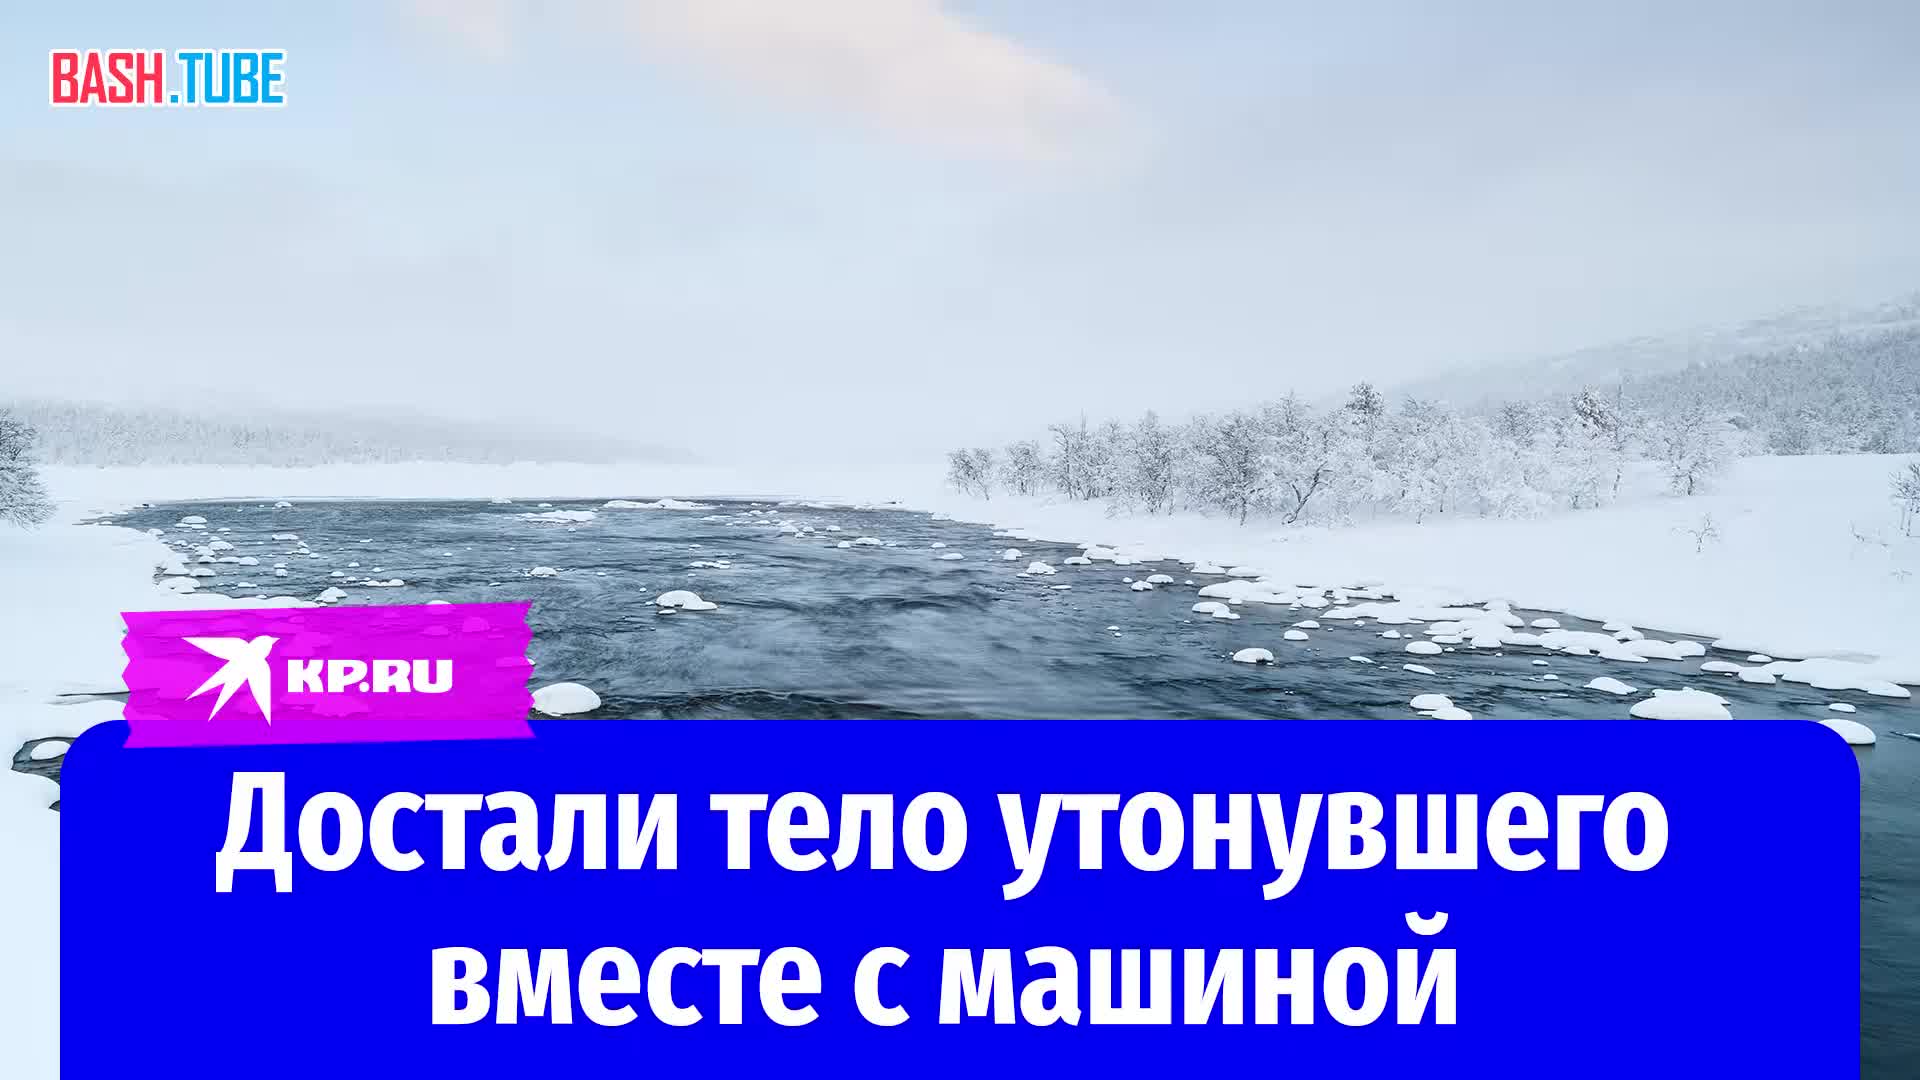  16 марта в Хабаровском крае на реке Амур утонул 22-летний мужчина, когда его автомобиль провалился под лед